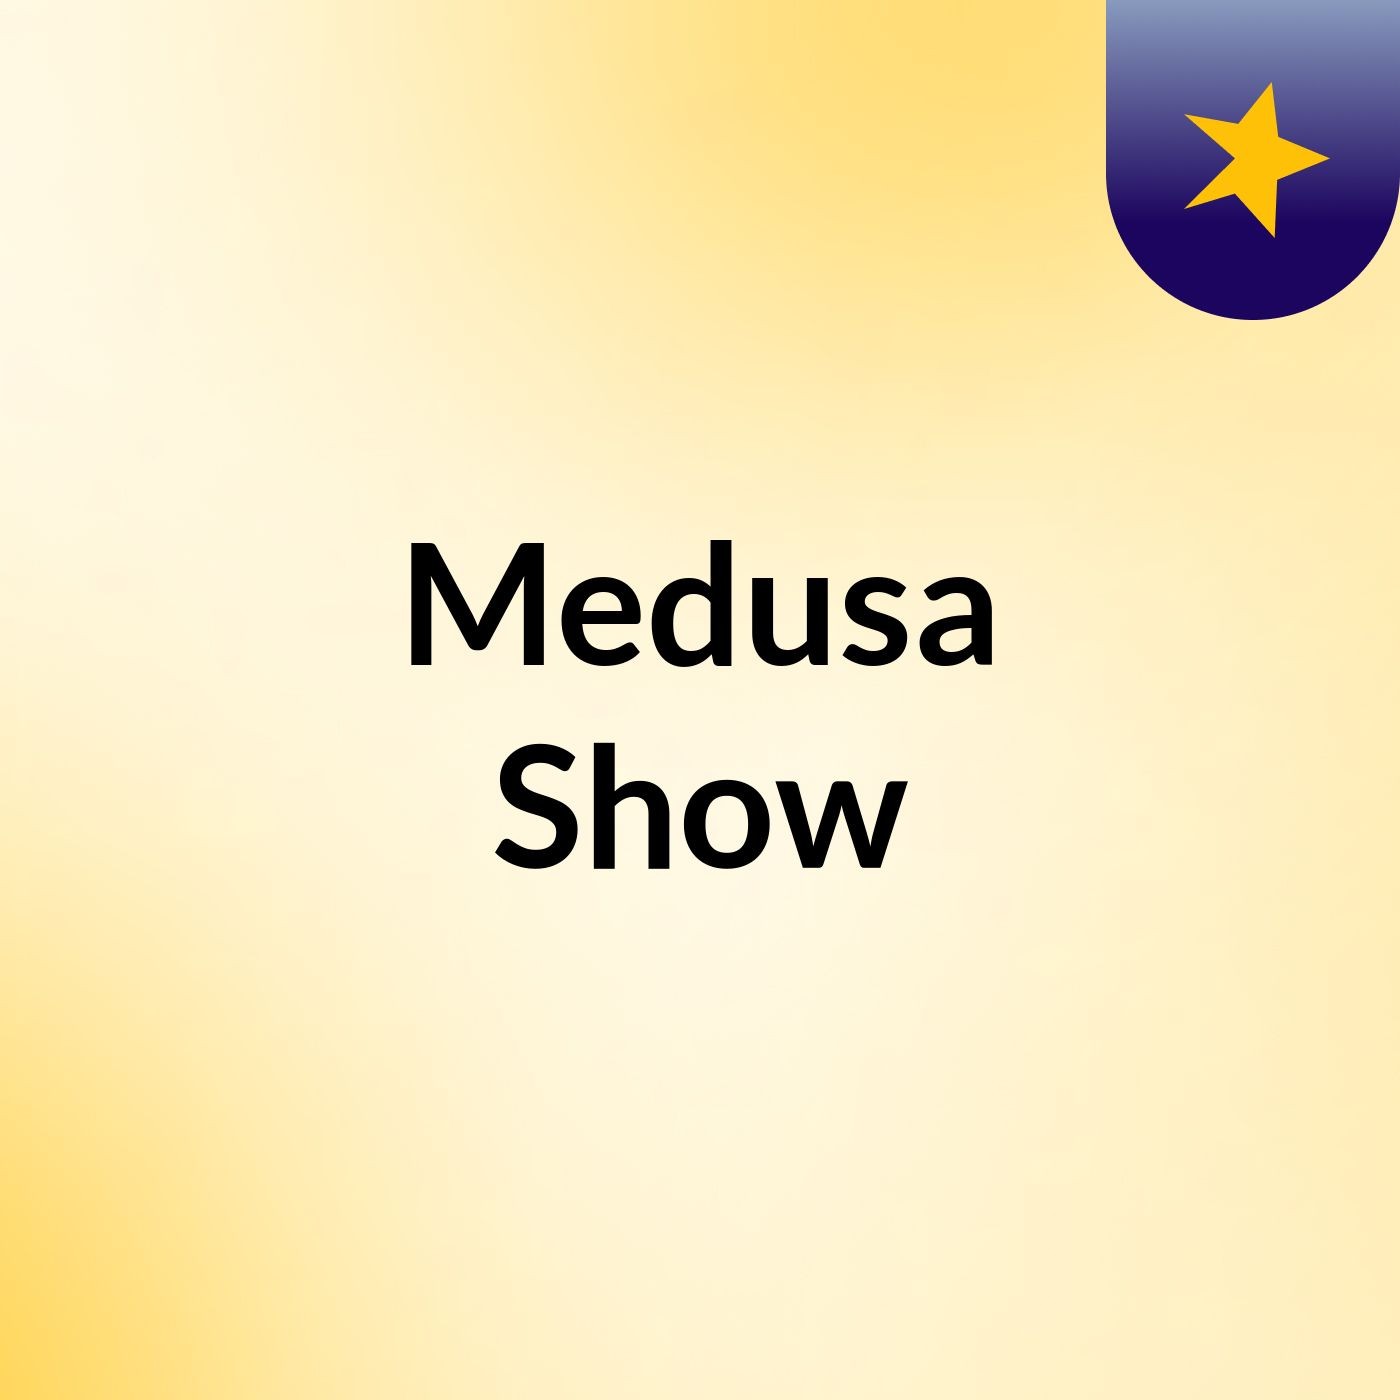 Medusa Show